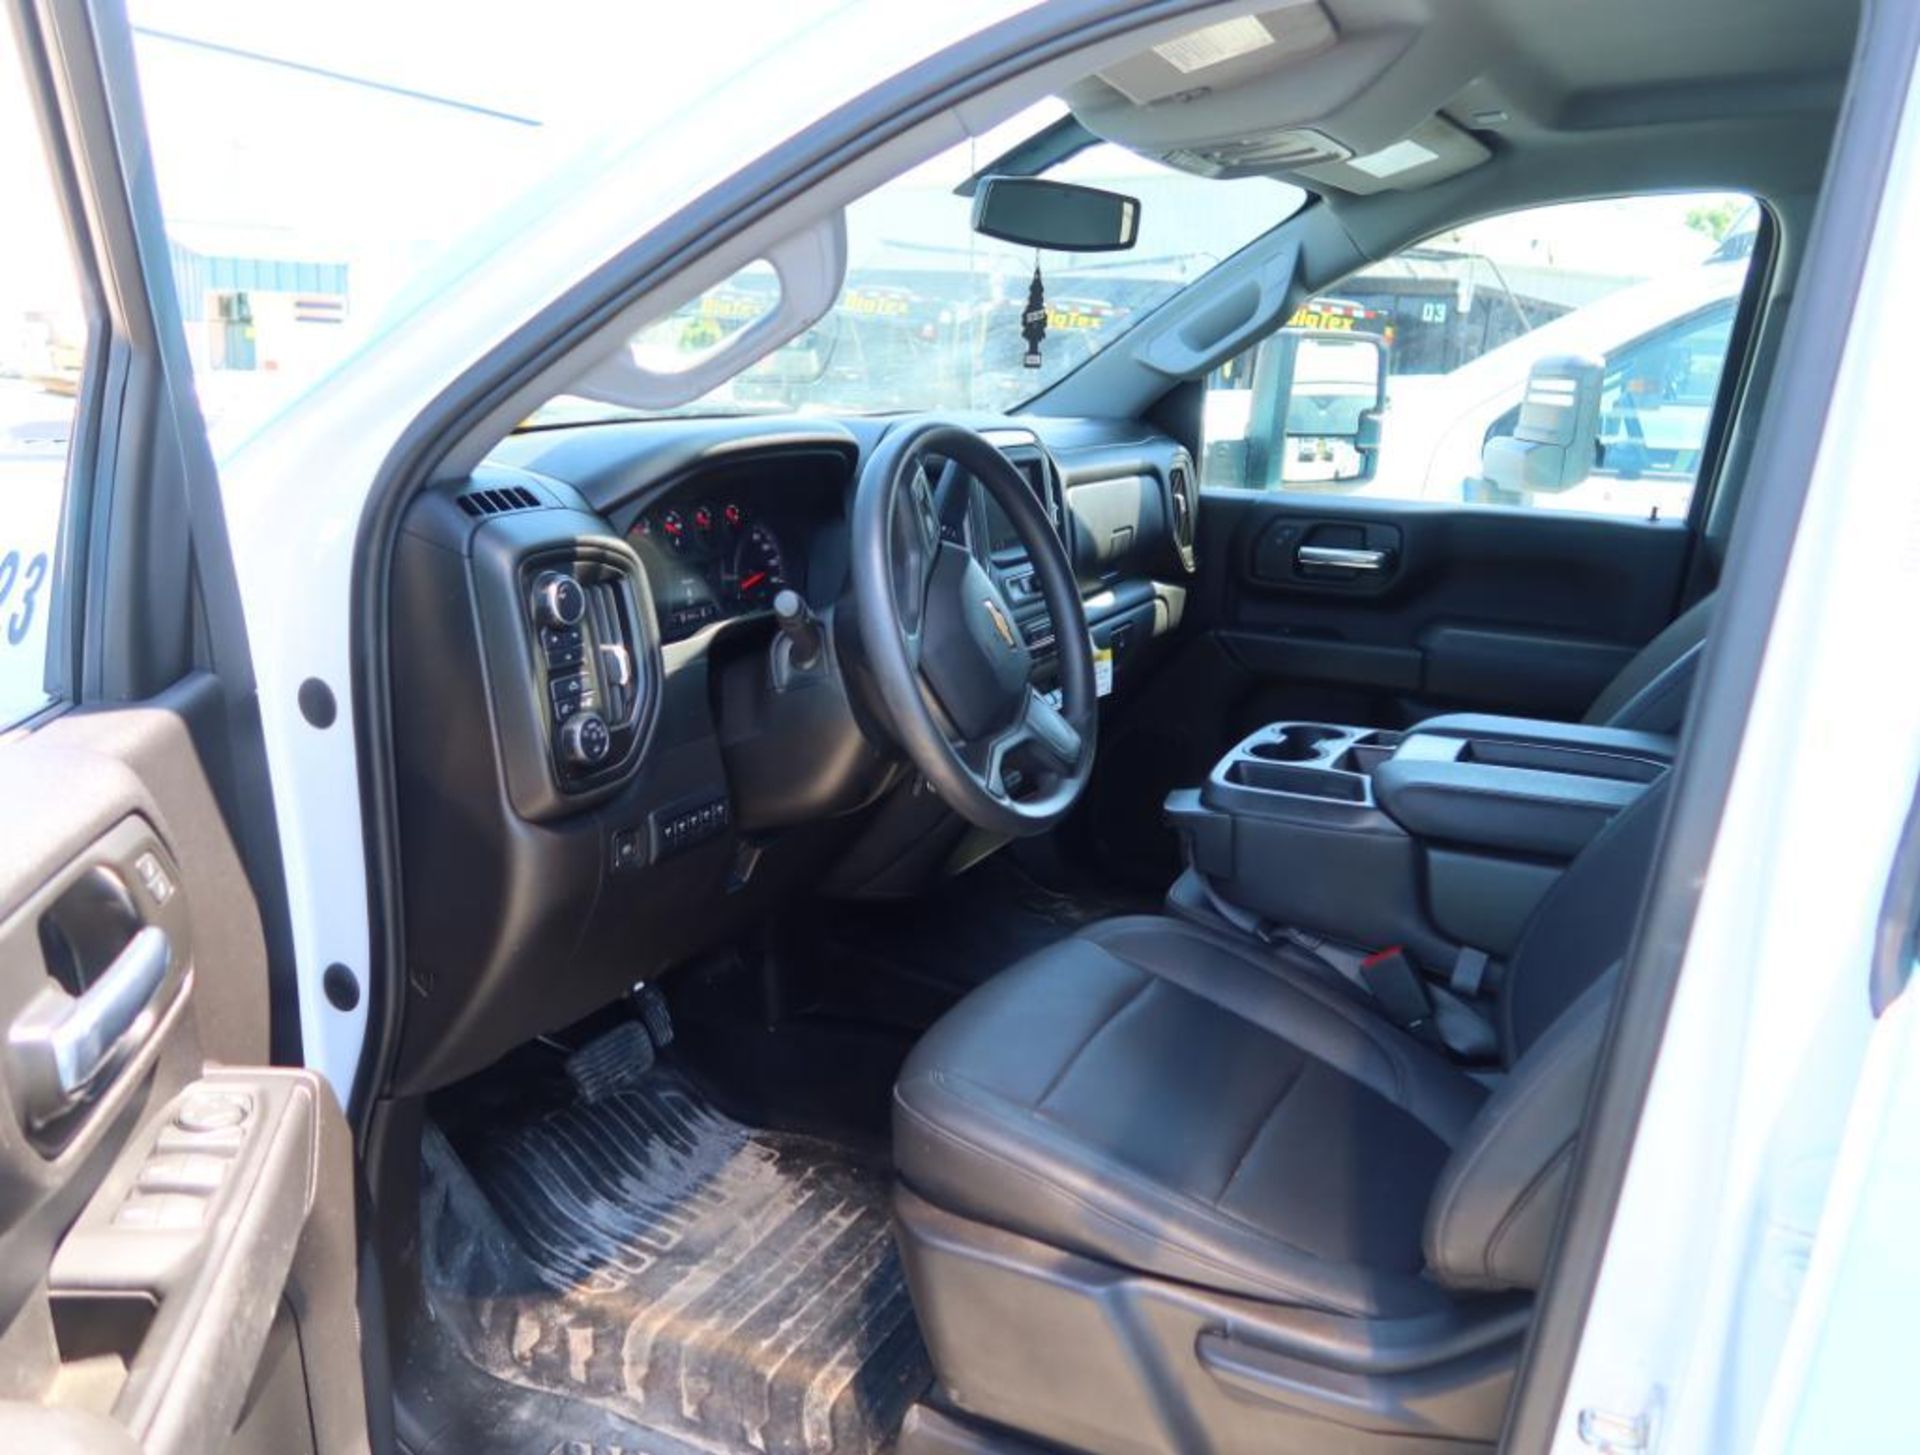 2023 Chevy Silverado 3500 4WD Crew Cab Wide Utility Bed Dual Wheel, Gas, License# AT2 0BH, VIN 1GB4Y - Image 6 of 8